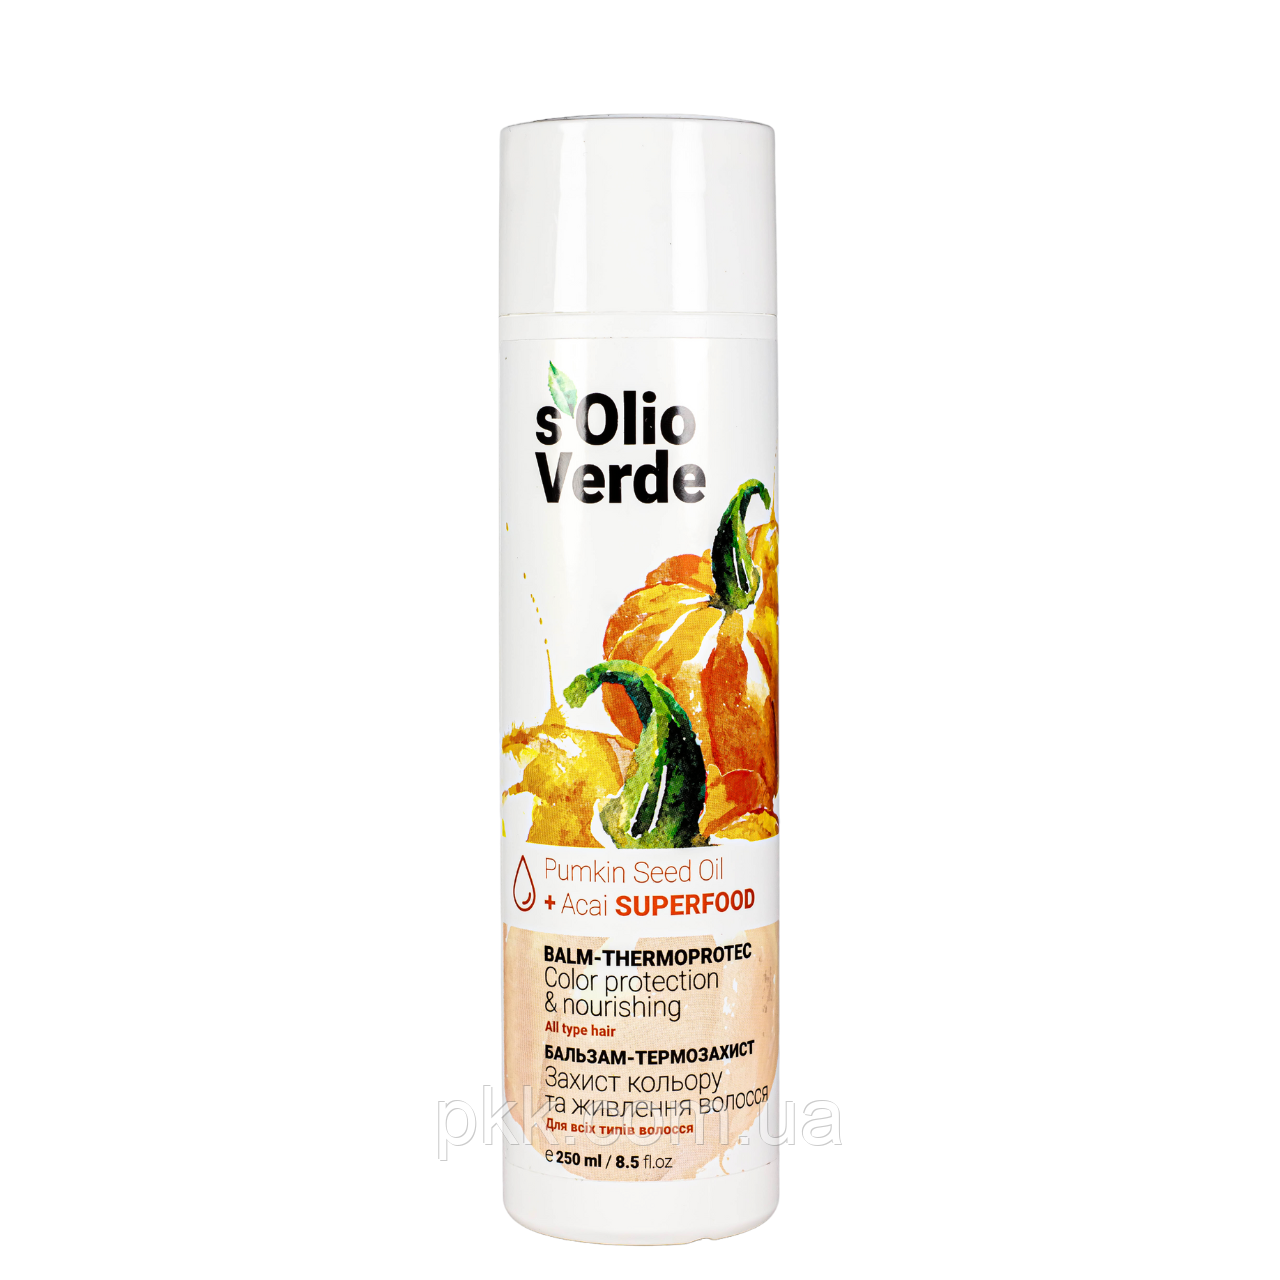 Бальзам термозахист для всіх типів волосся S'Olio Verde Pumpkin Seed Oil